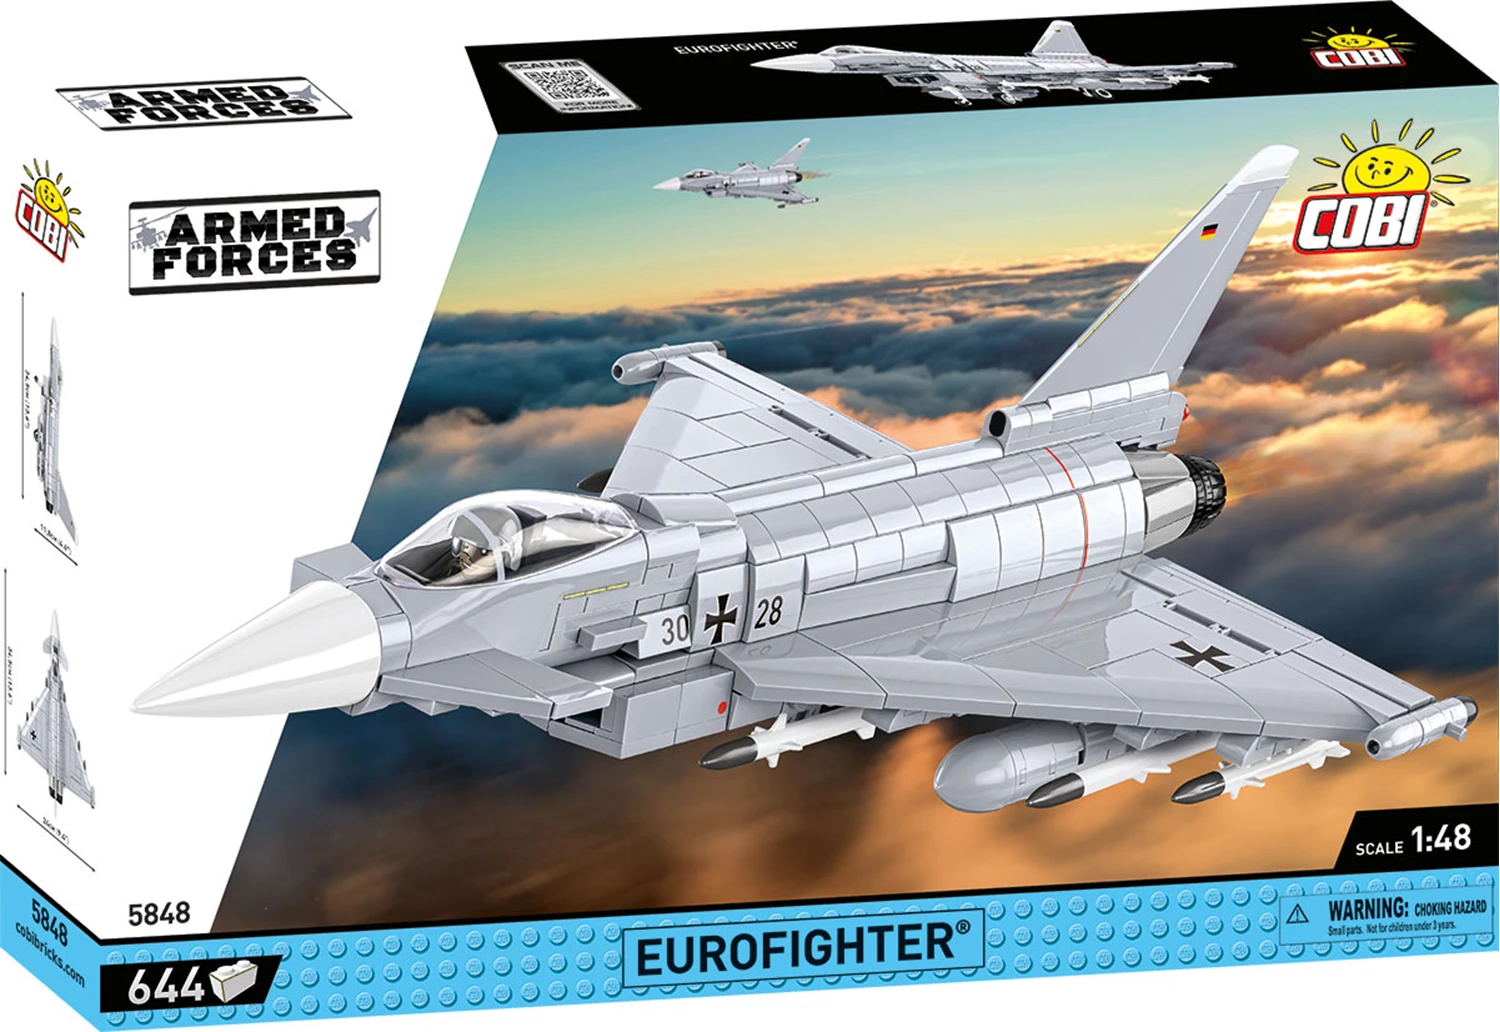 Cobi 5848 Eurofighter / 644 pcs.